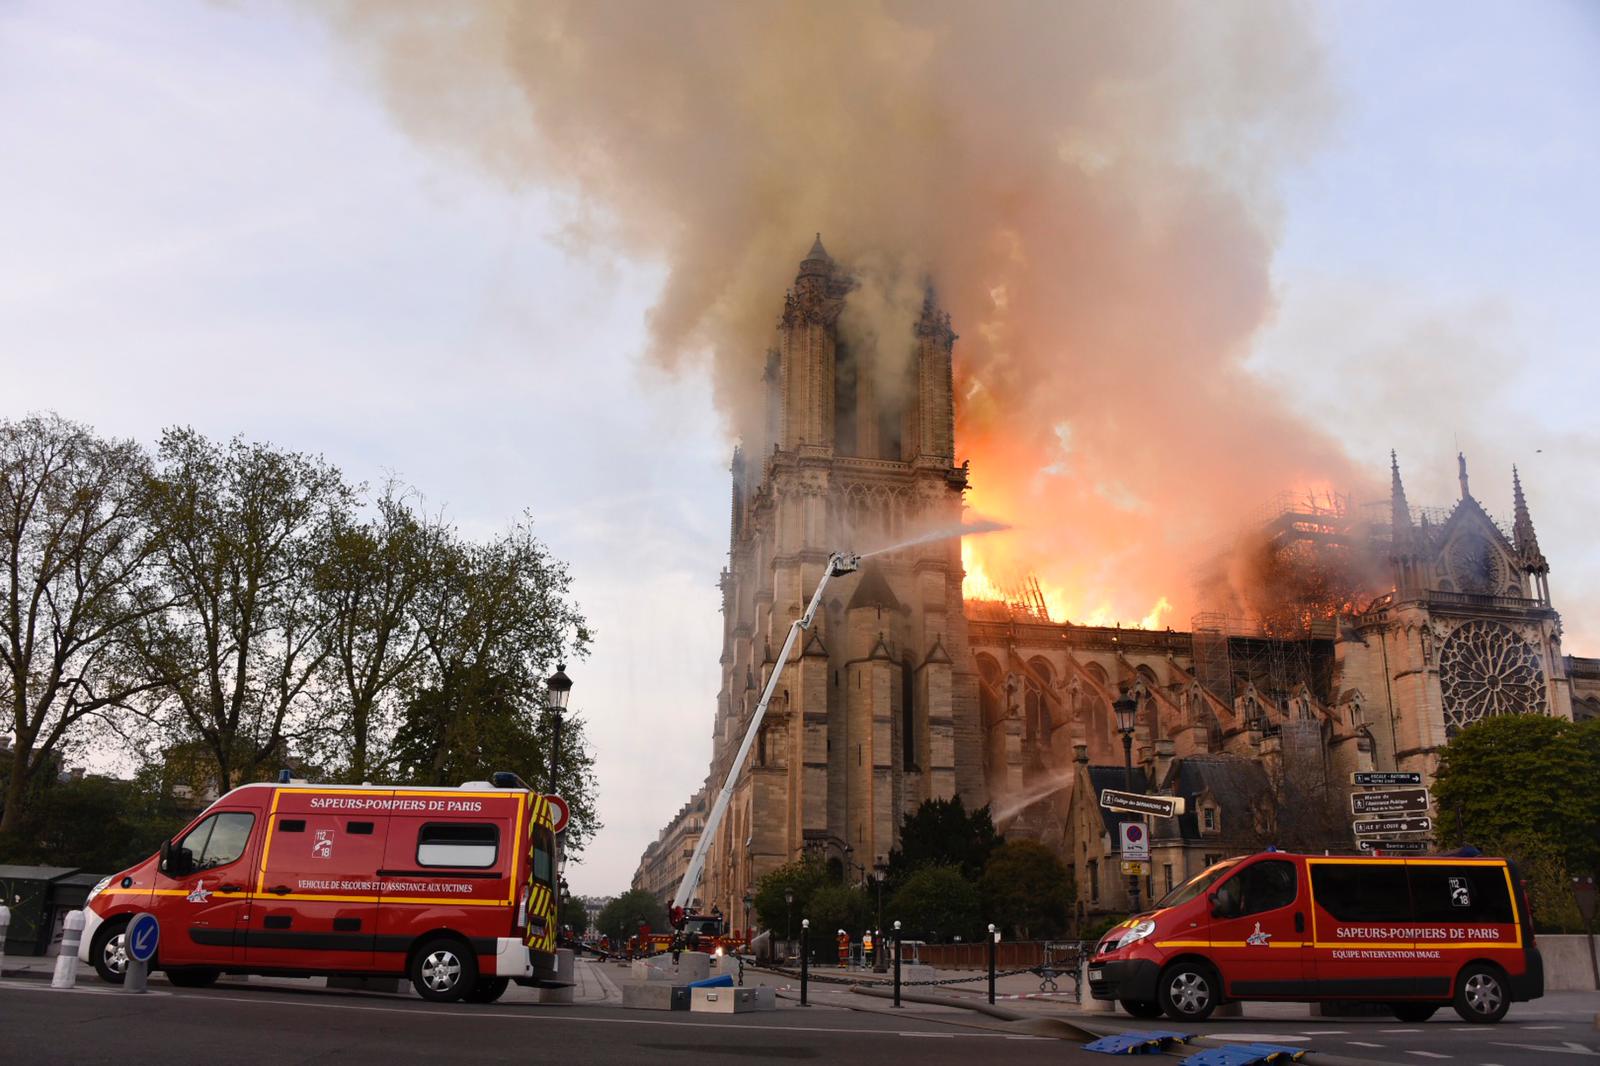 Parigi, brucia Notre-Dame: enorme incendio, il fuoco avvolge la cattedrale, crollata la guglia. Il video in diretta